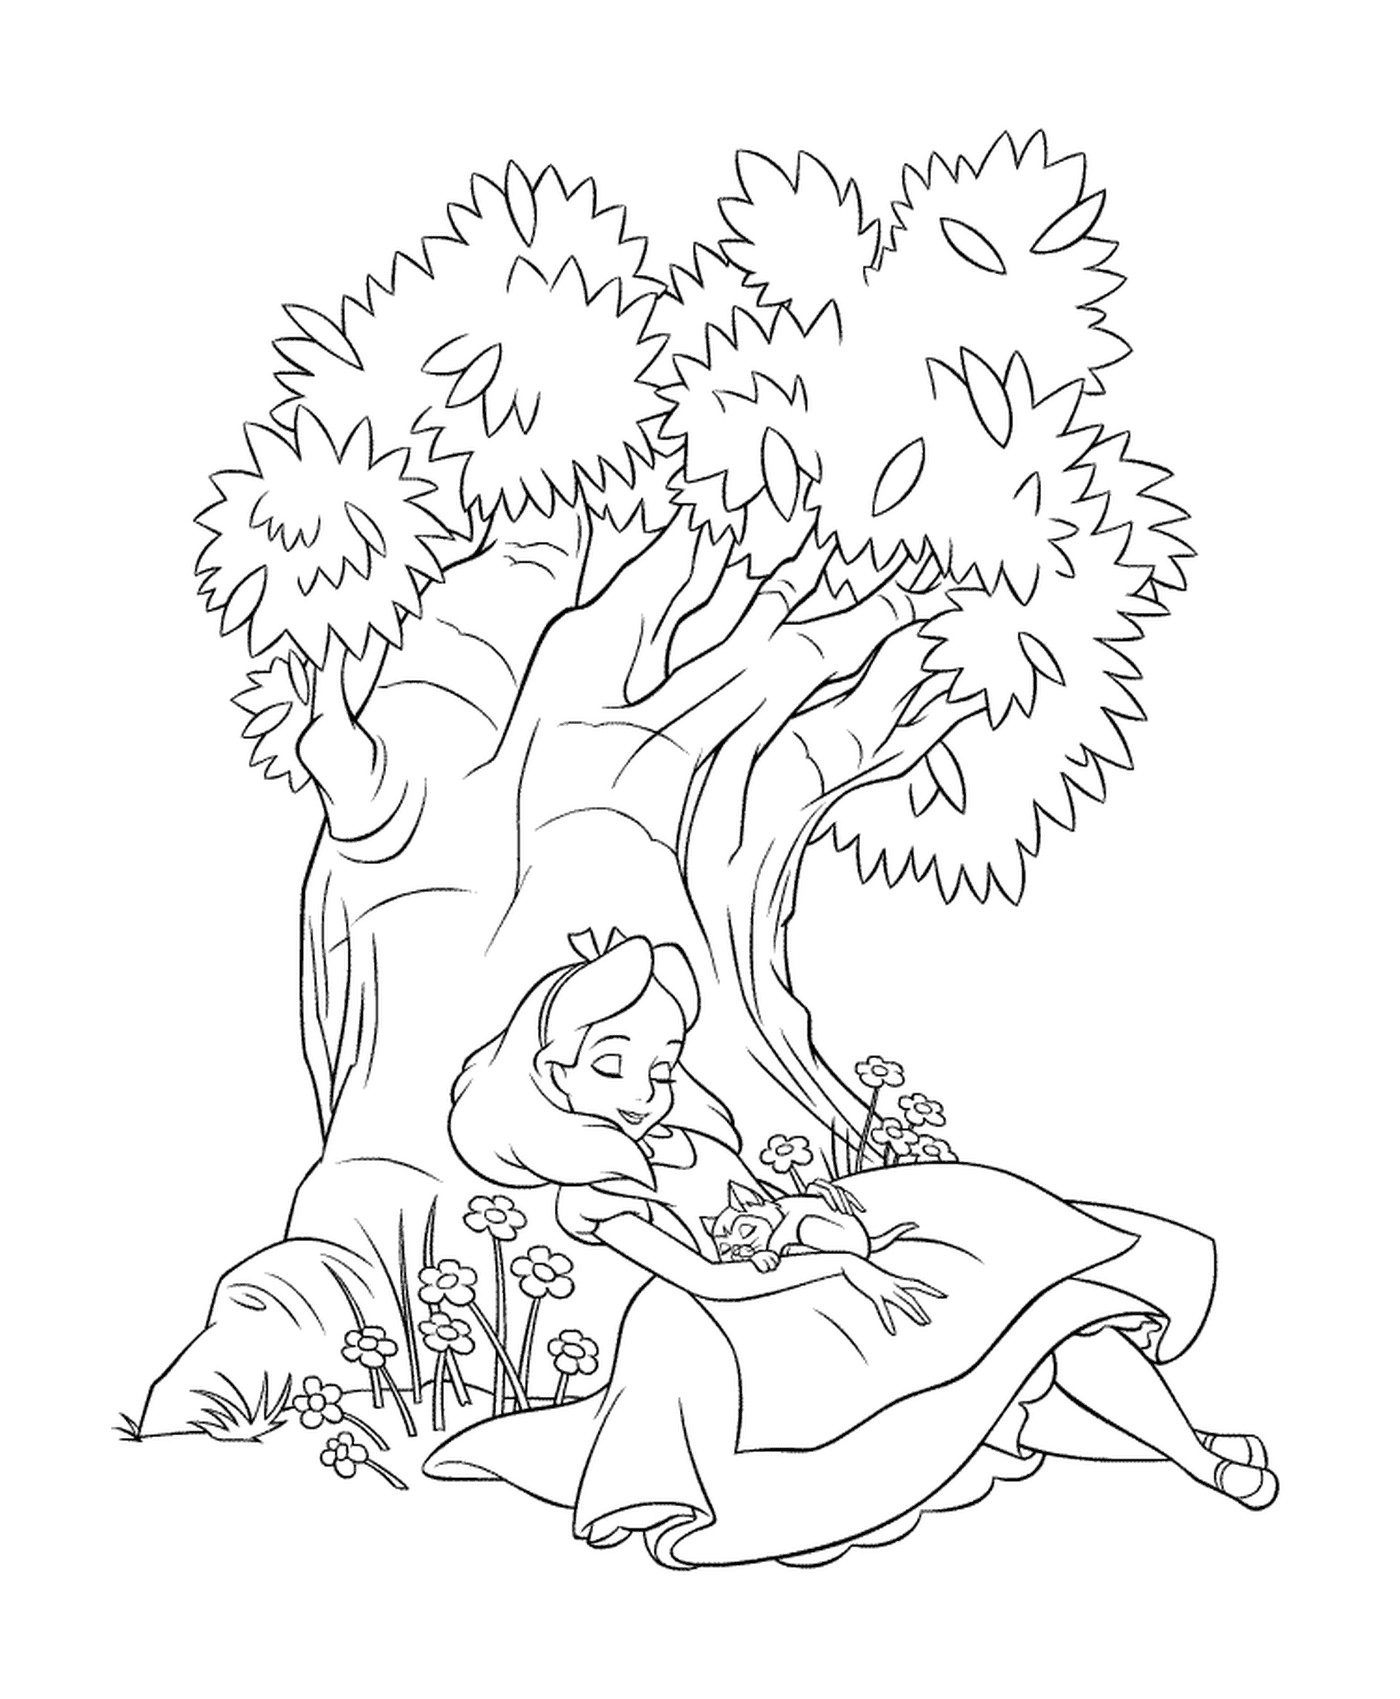  Uma menina sentada debaixo de uma árvore 